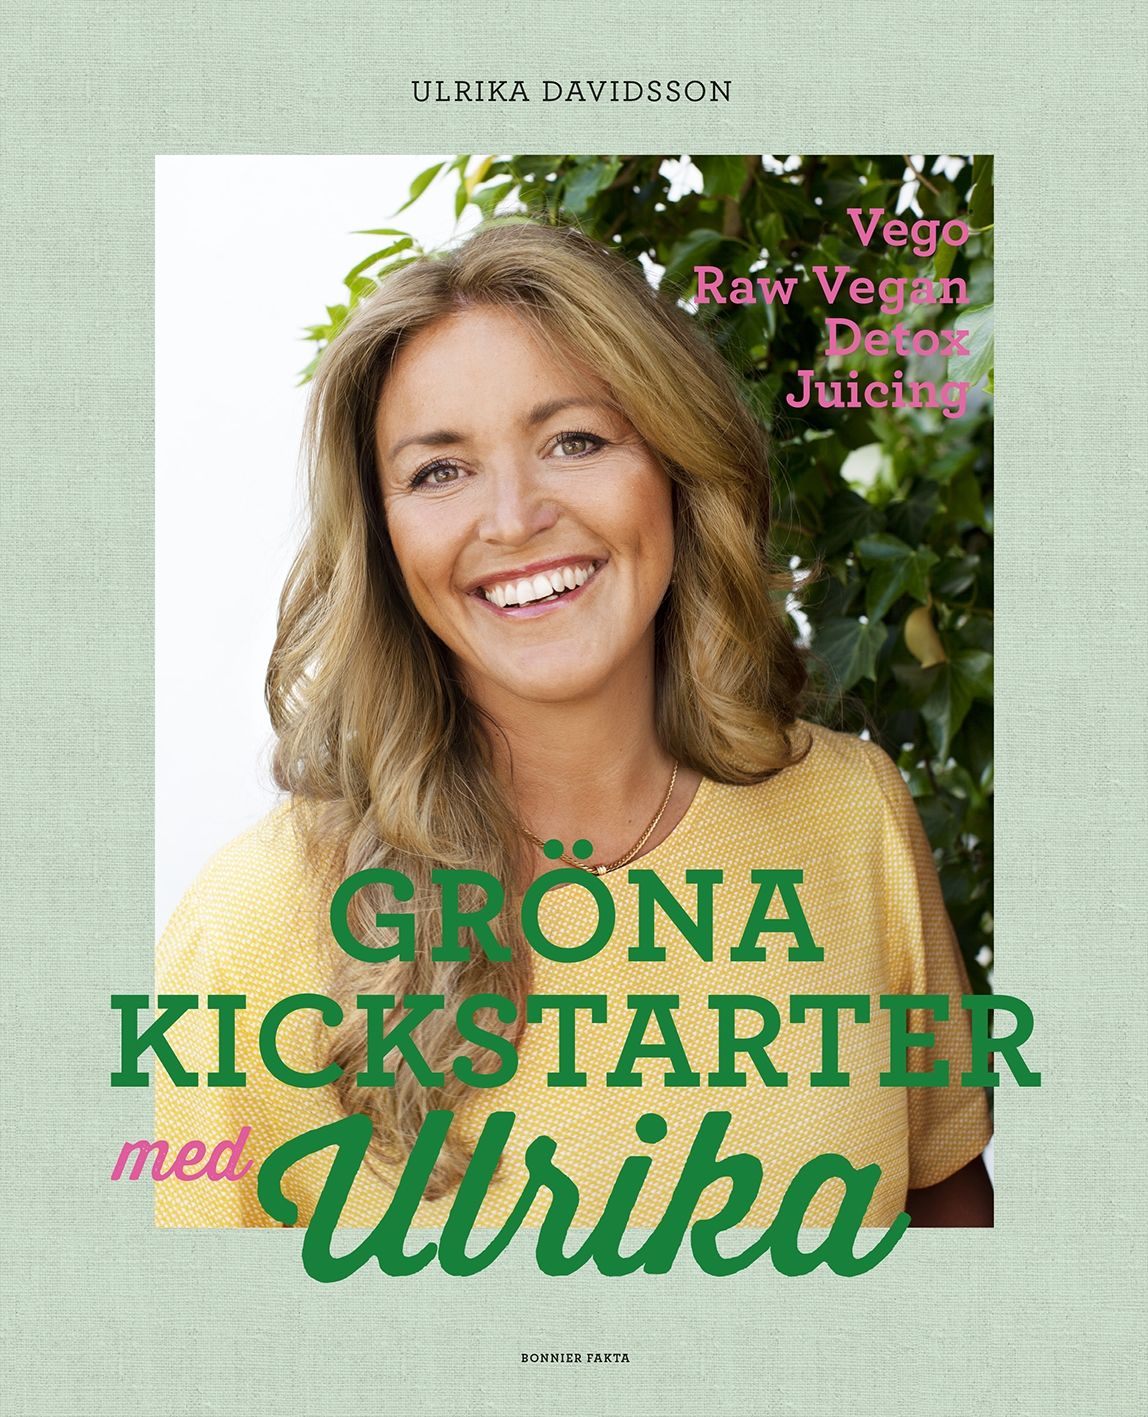 Gröna kickstarter med Ulrika, e-bok av Ulrika Davidsson